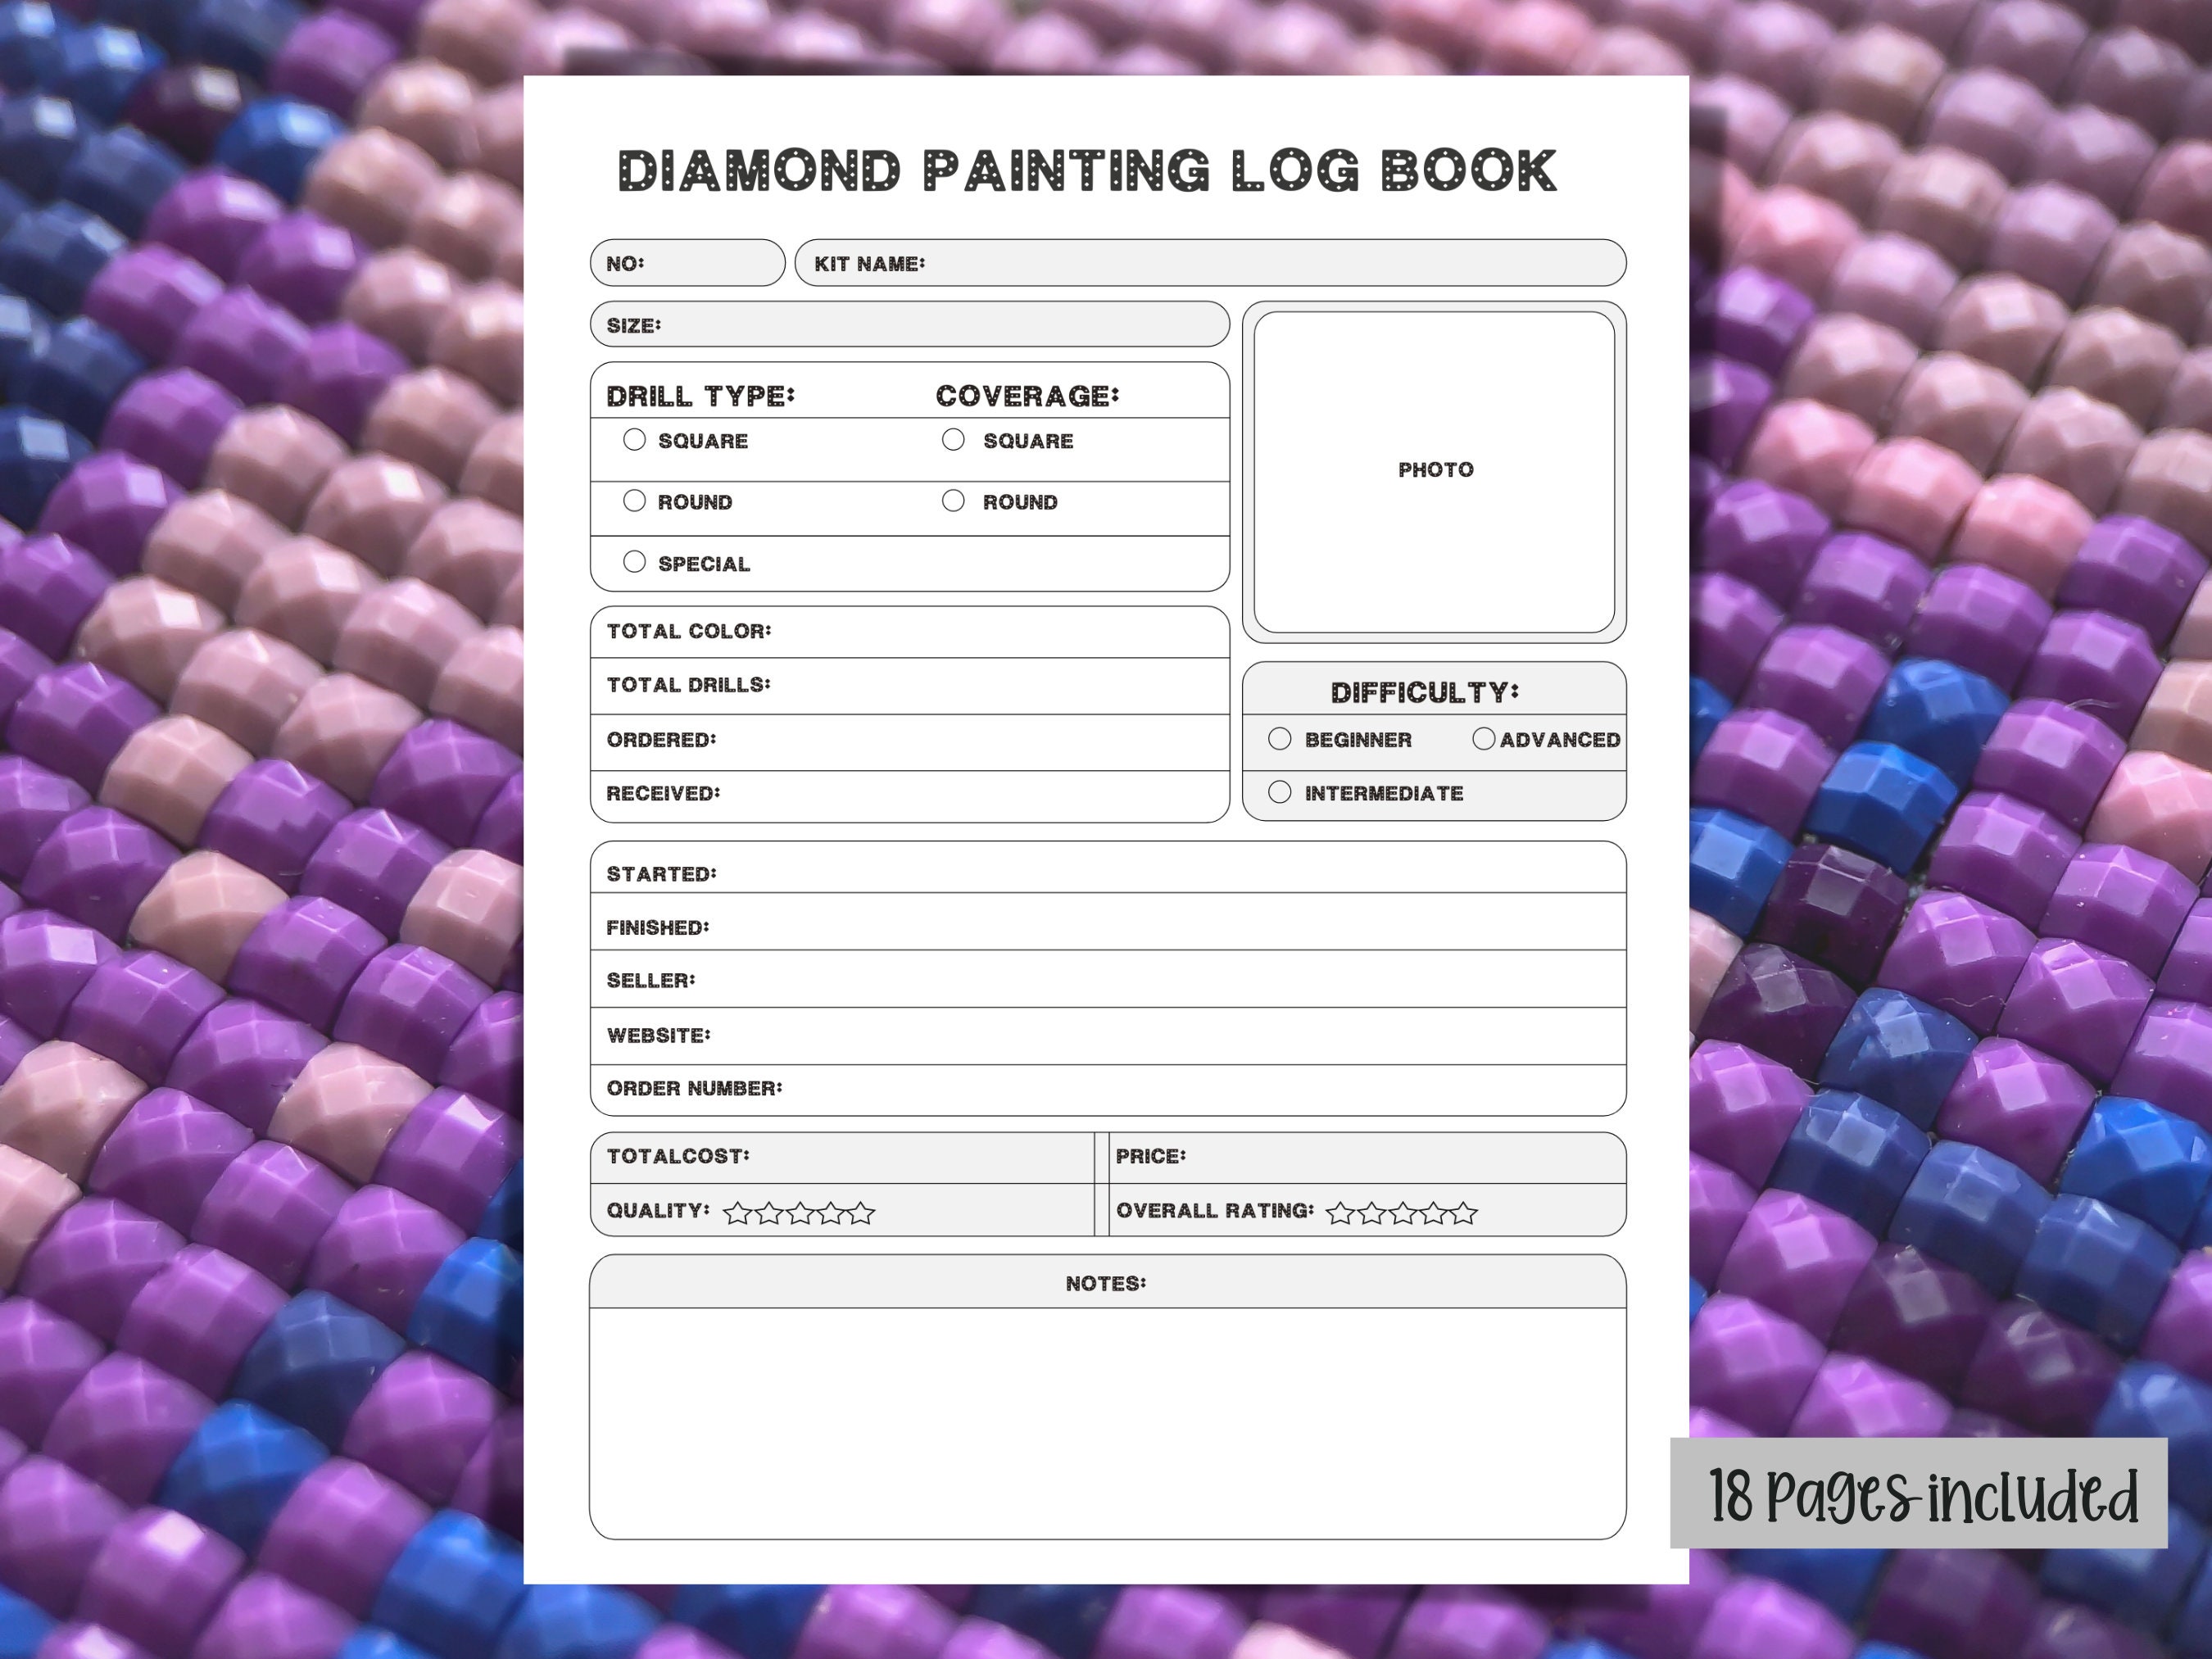 Buy Diamond Painting Log Book, Printable Digital Diamond Painting